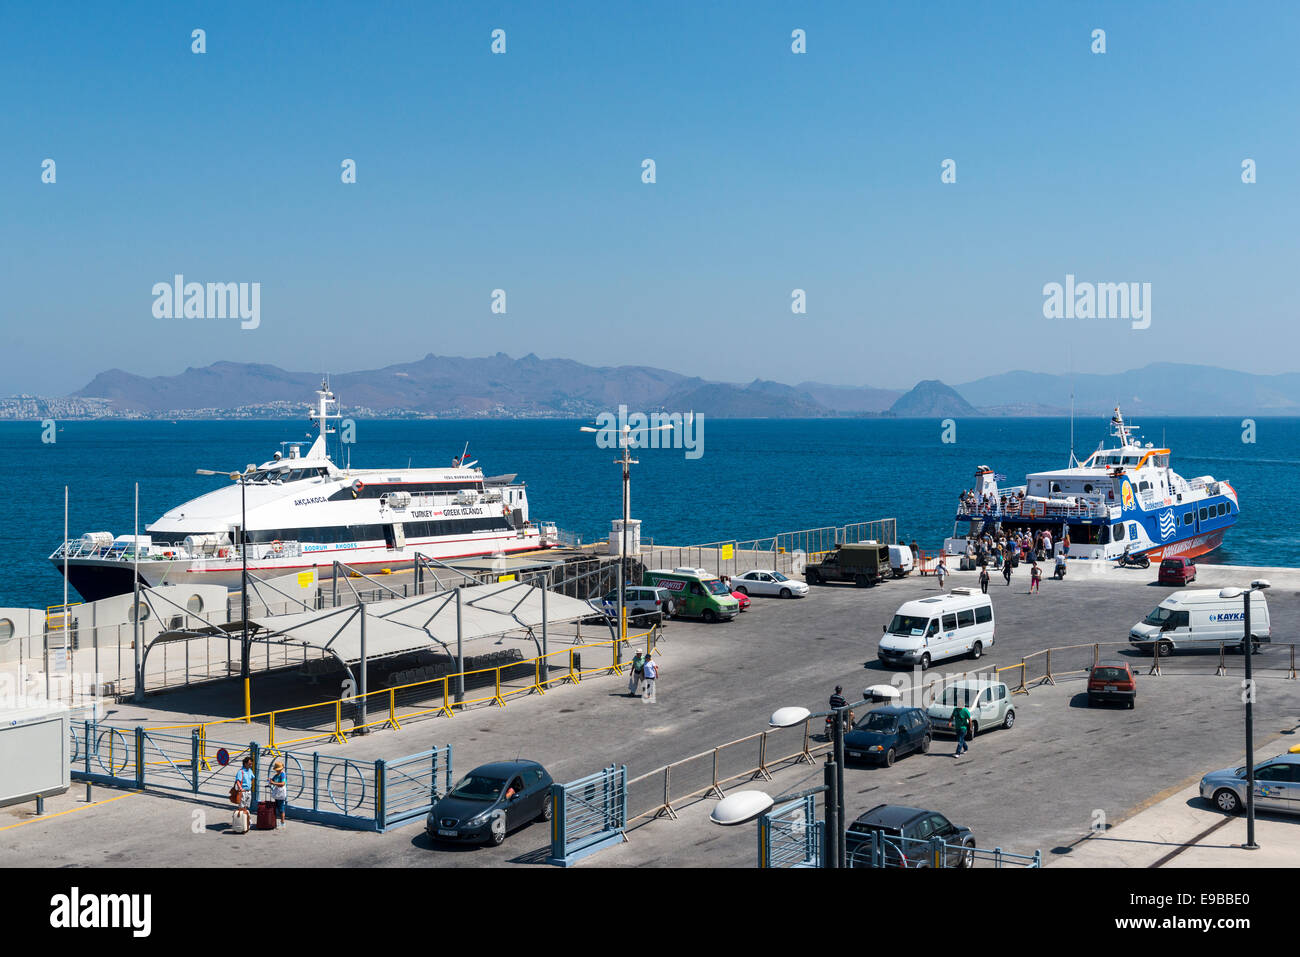 Ferries à quai dans le port de Kos, île de Kos, Grèce Banque D'Images